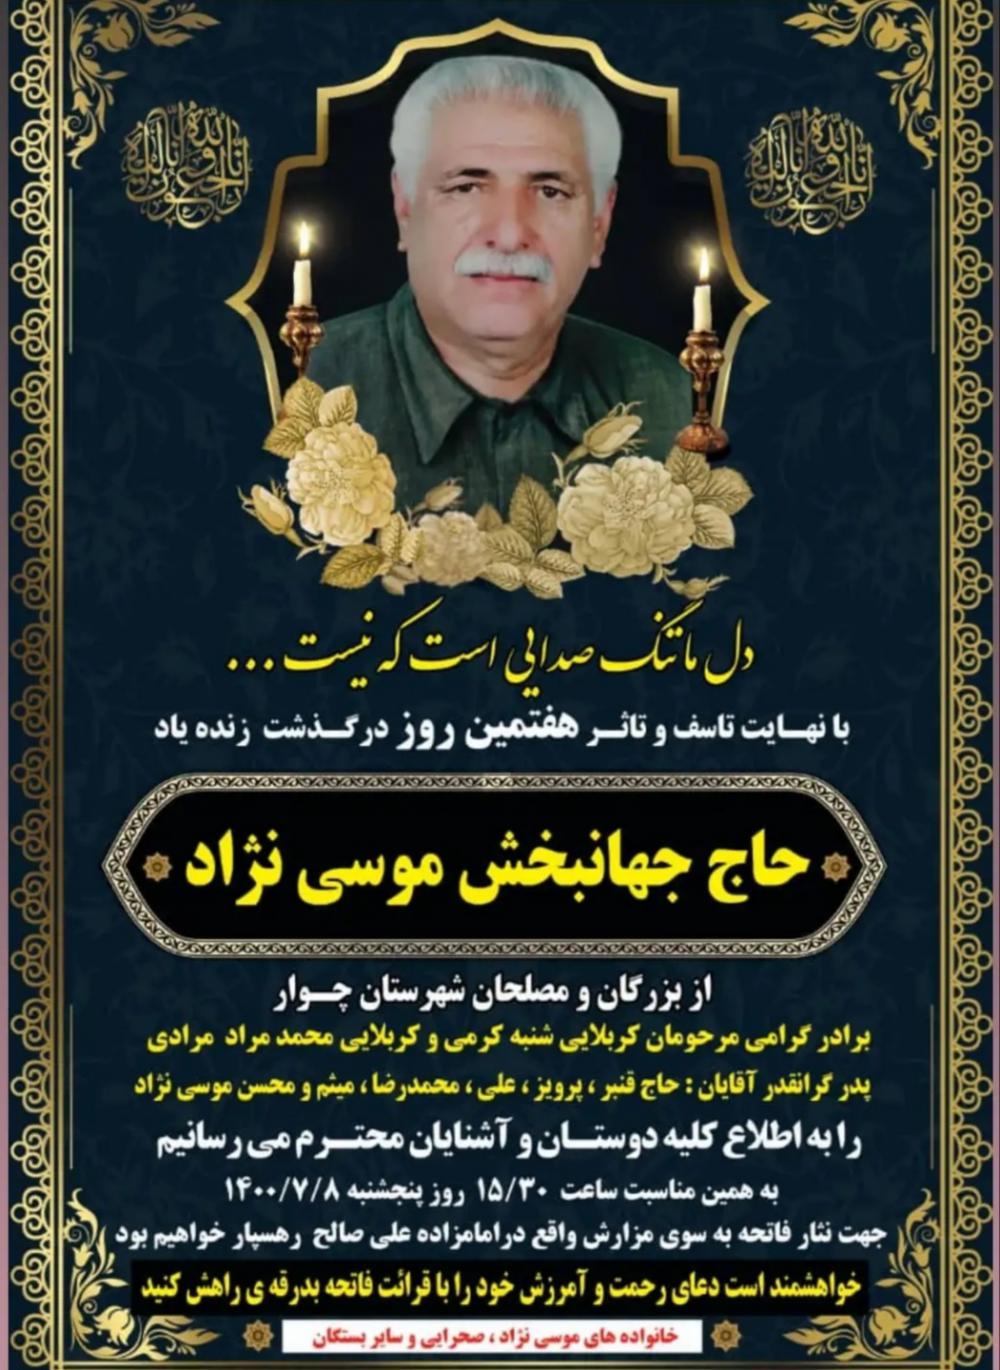 یادبود شادروان حاج جهانبخش موسی نژاد